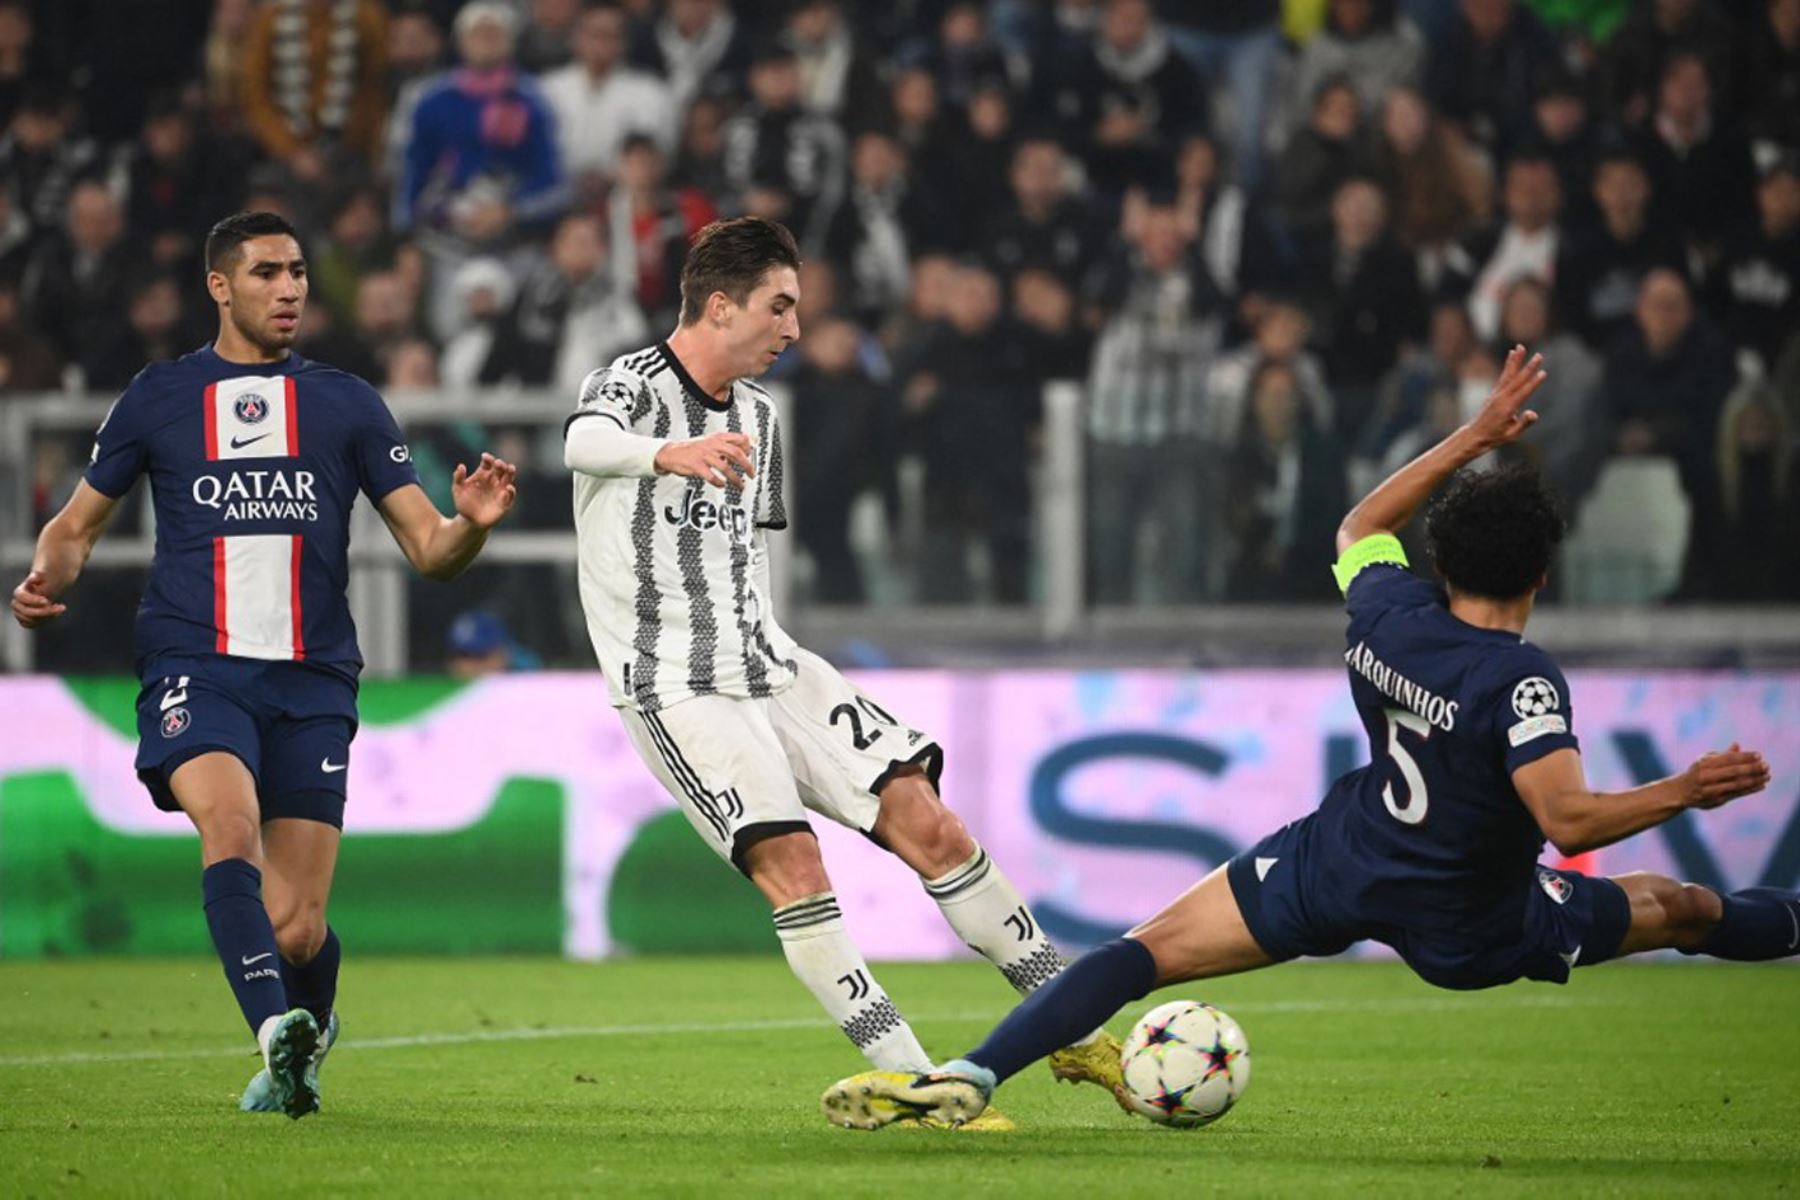 El centrocampista italiano de la Juventus, Fabio Miretti, intenta marcar durante la primera ronda de la Liga de Campeones de la UEFA, día 6, partido de fútbol del grupo H entre la Juventus de Turín y el Paris Saint-Germain

Foto: AFP